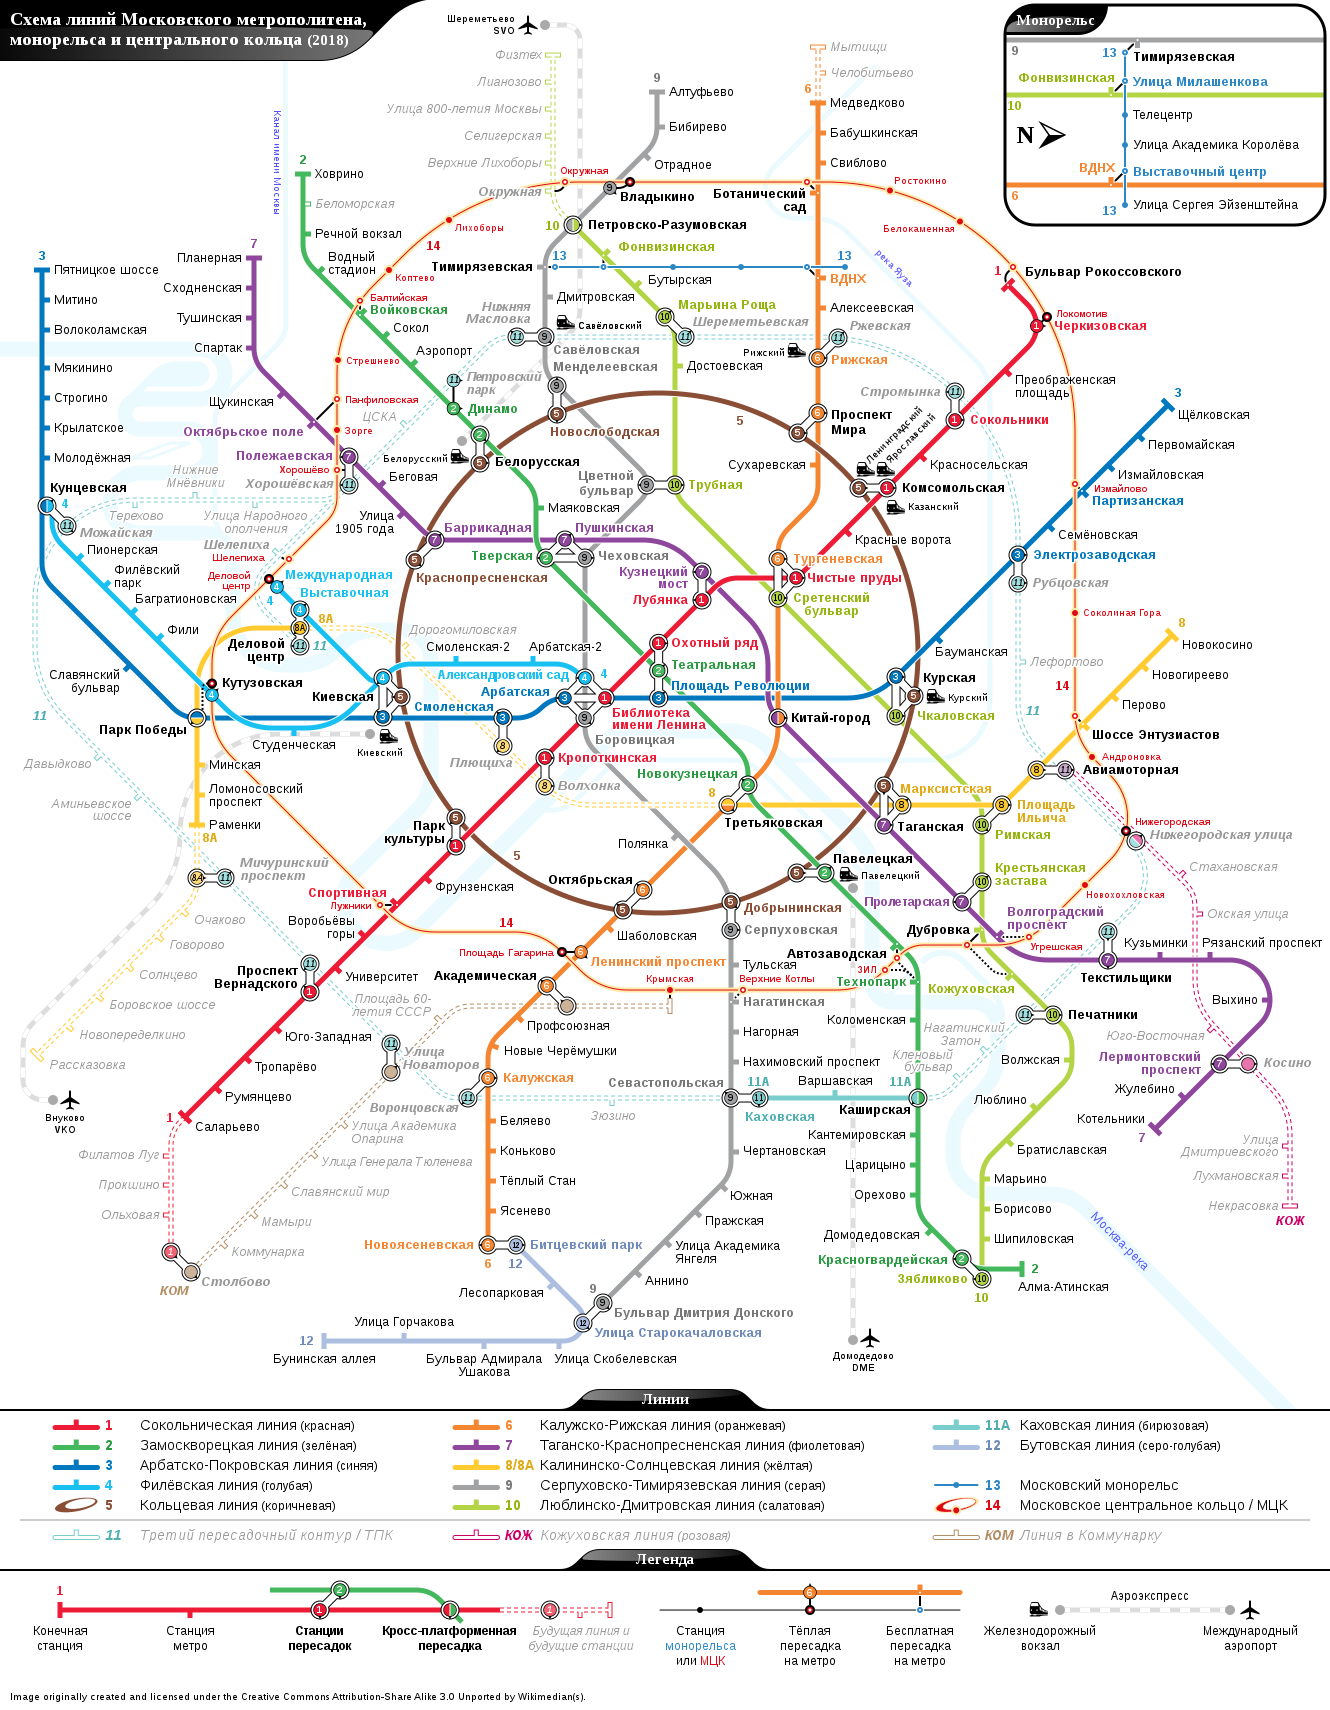 Moszkva — Metro — Project amps